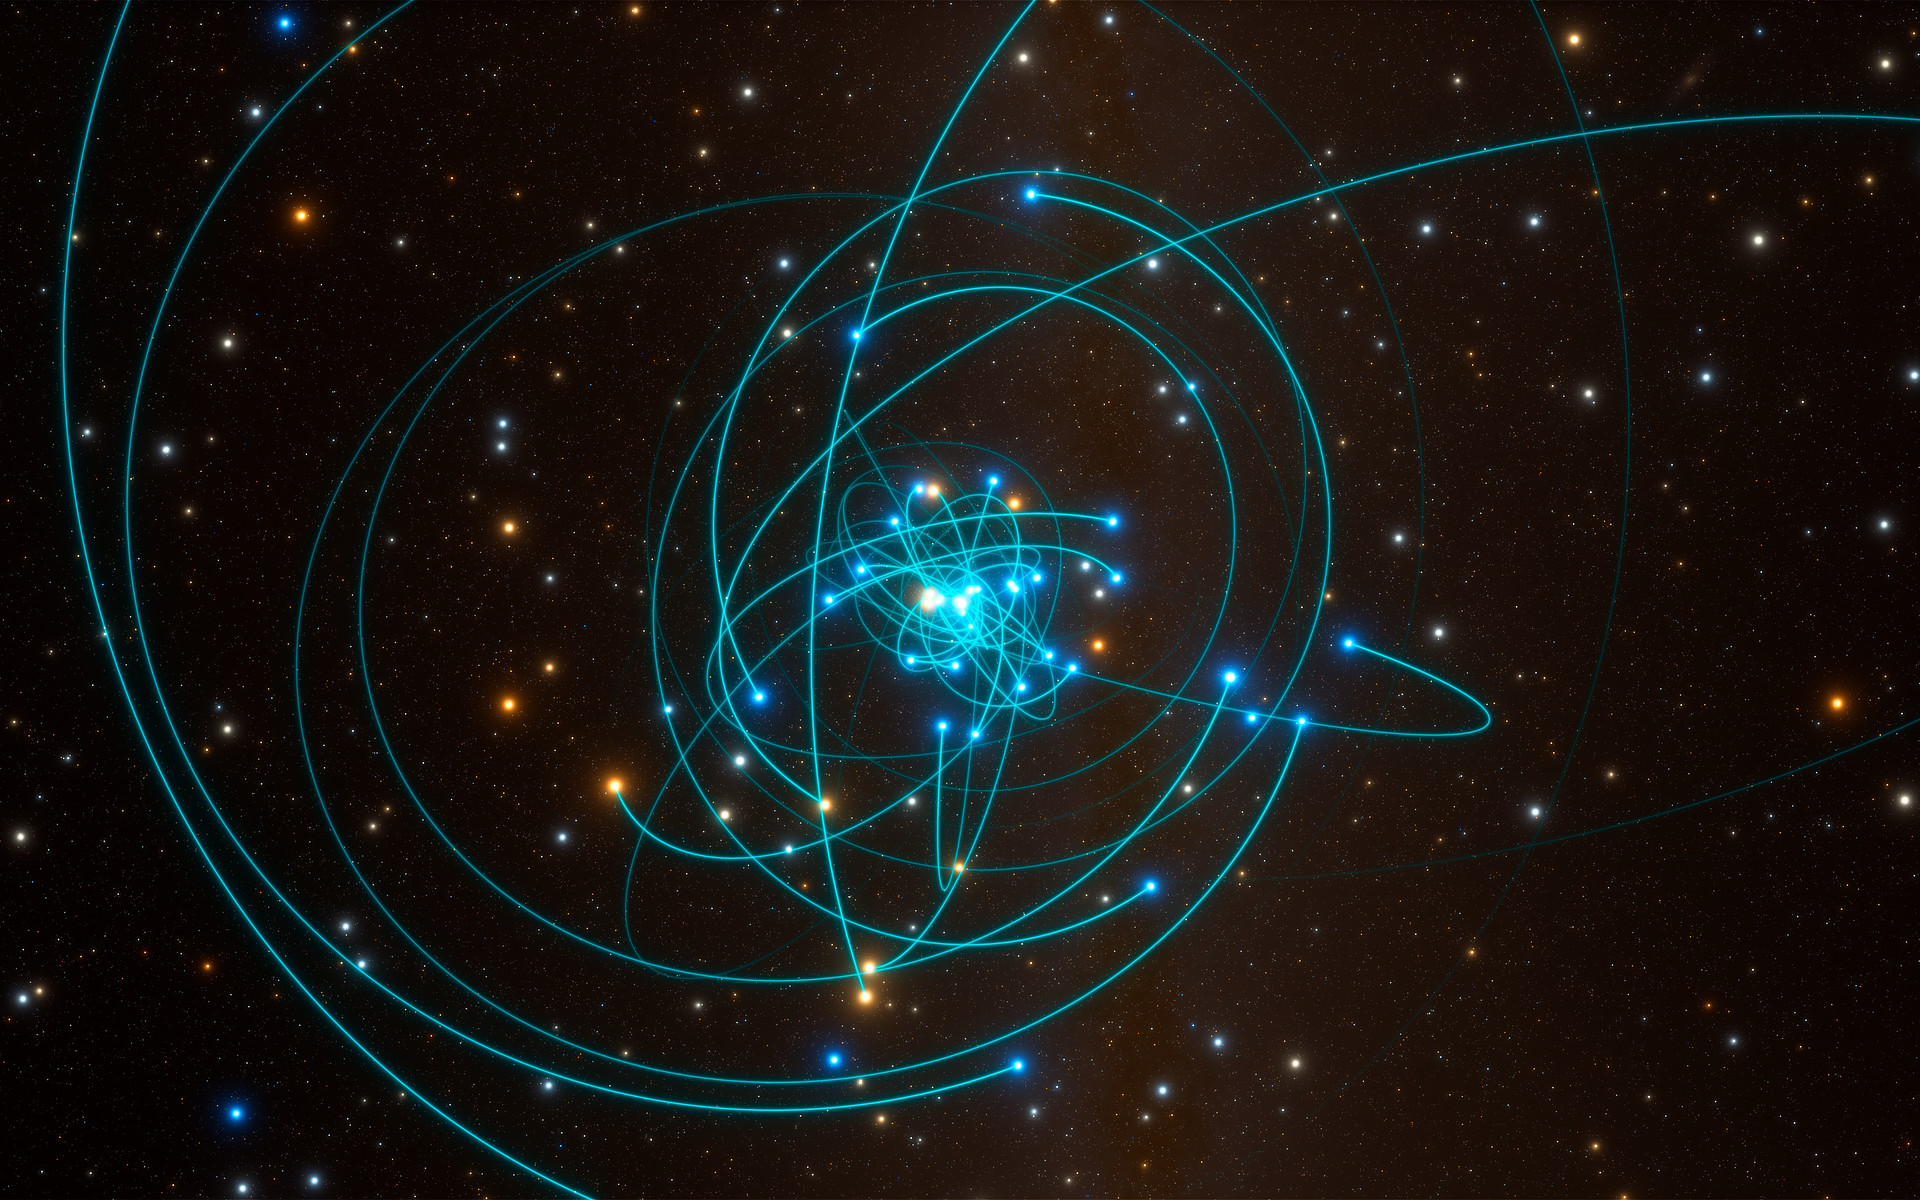 Cette simulation figure les orbites d’étoiles situées à très grande proximité du trou noir supermassif qui occupe le centre de la Voie lactée. L’une de ces étoiles, baptisée S2, est caractérisée par une périodicité orbitale de 16 années. Elle passa à très grande proximité du trou noir en mai 2018. Cet environnement constitue le laboratoire de test idéal de la physique gravitationnelle, et plus particulièrement de la théorie de la relativité générale d’Einstein. © ESO, L. Calçada, spaceengine.org